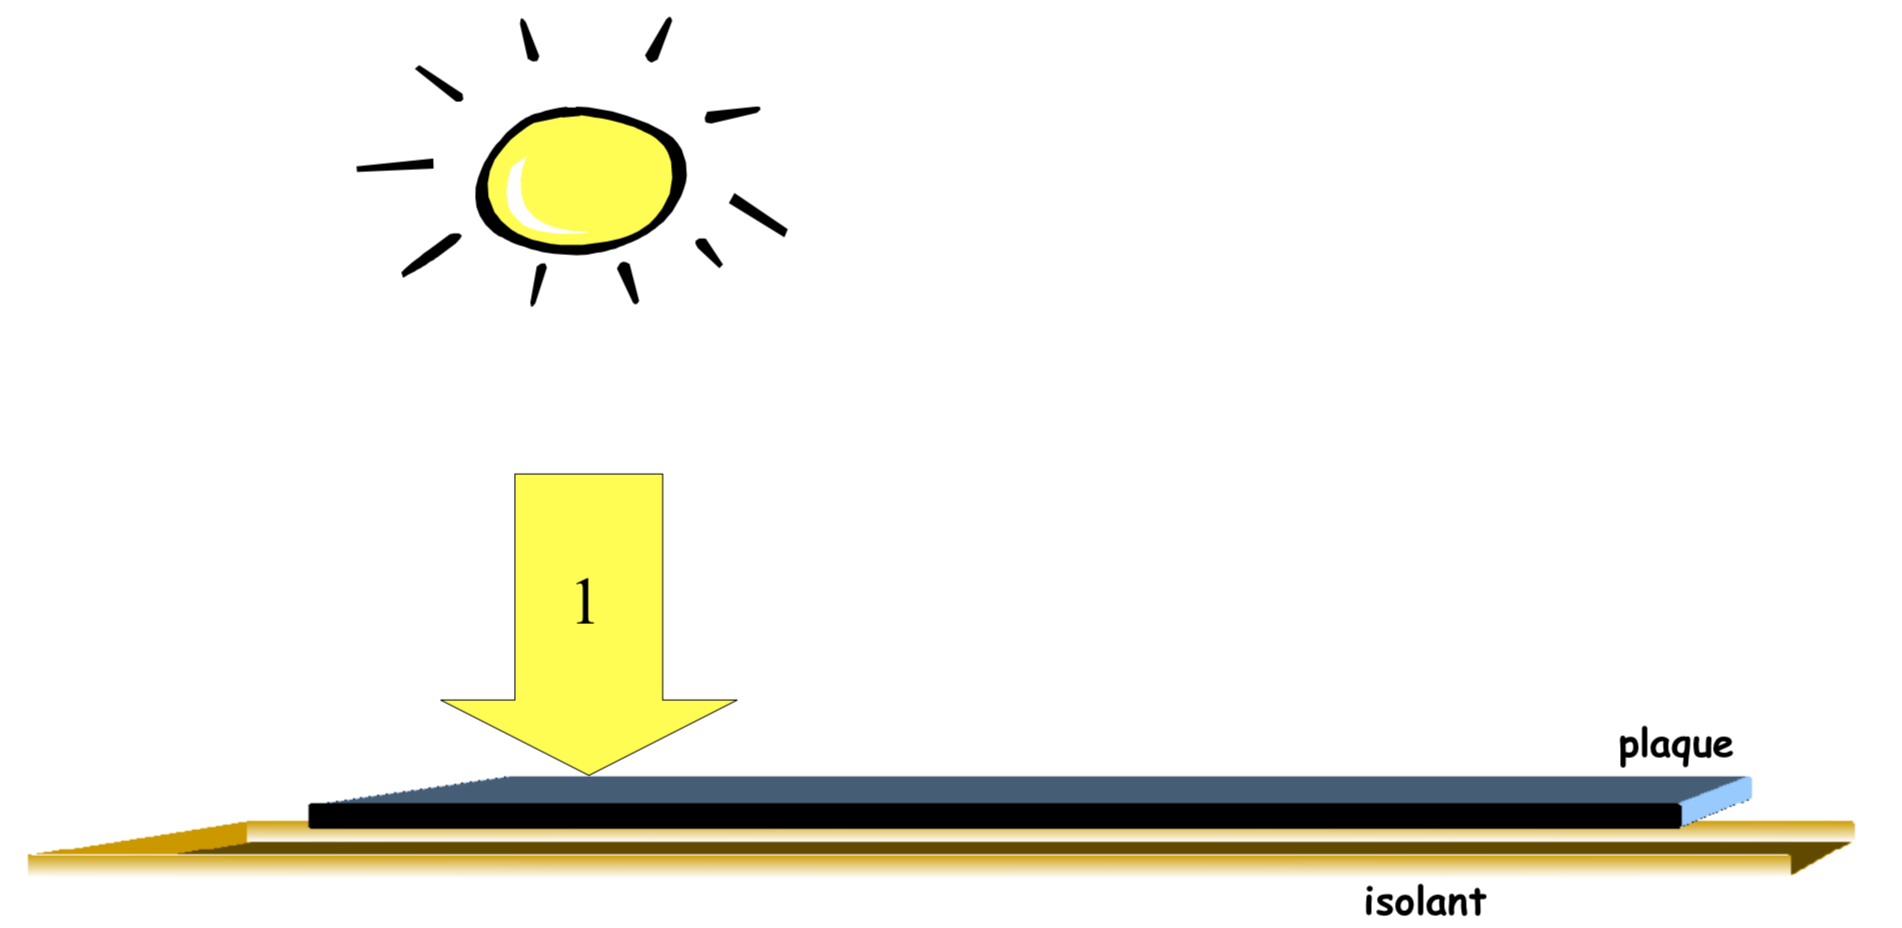 On place cette plaque au soleil : parce qu’elle est noire, elle absorbe le rayonnement solaire. Elle va gagner de l’énergie